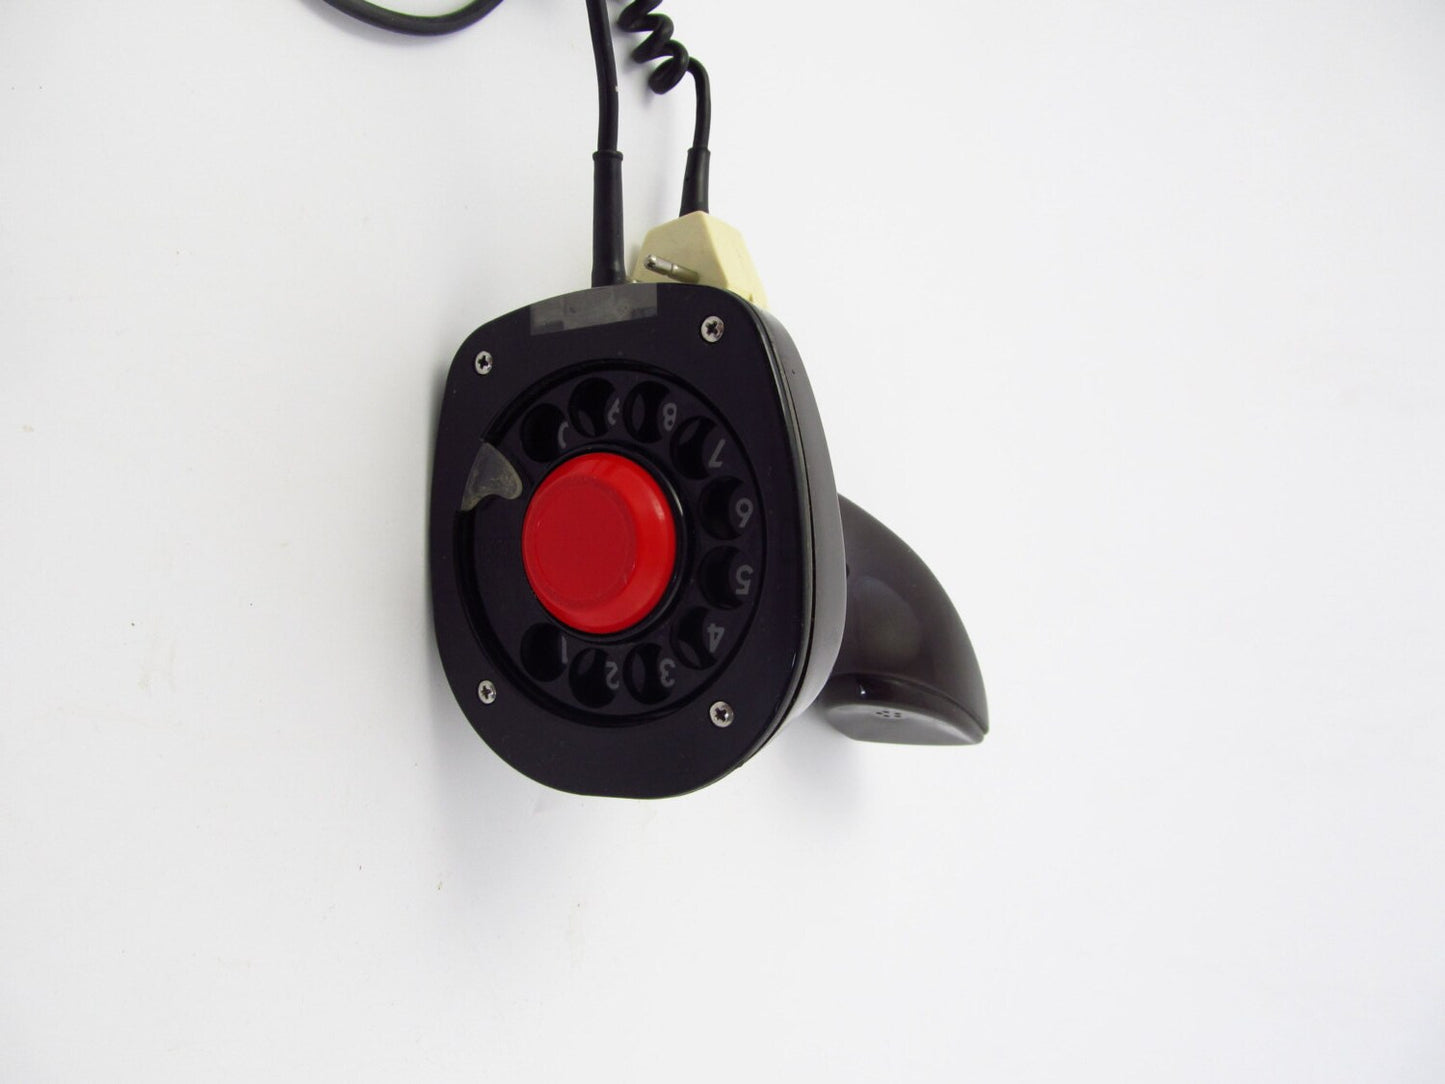 Marrón muy oscuro Ericofon famoso teléfono moderno de mediados de siglo de ericsson